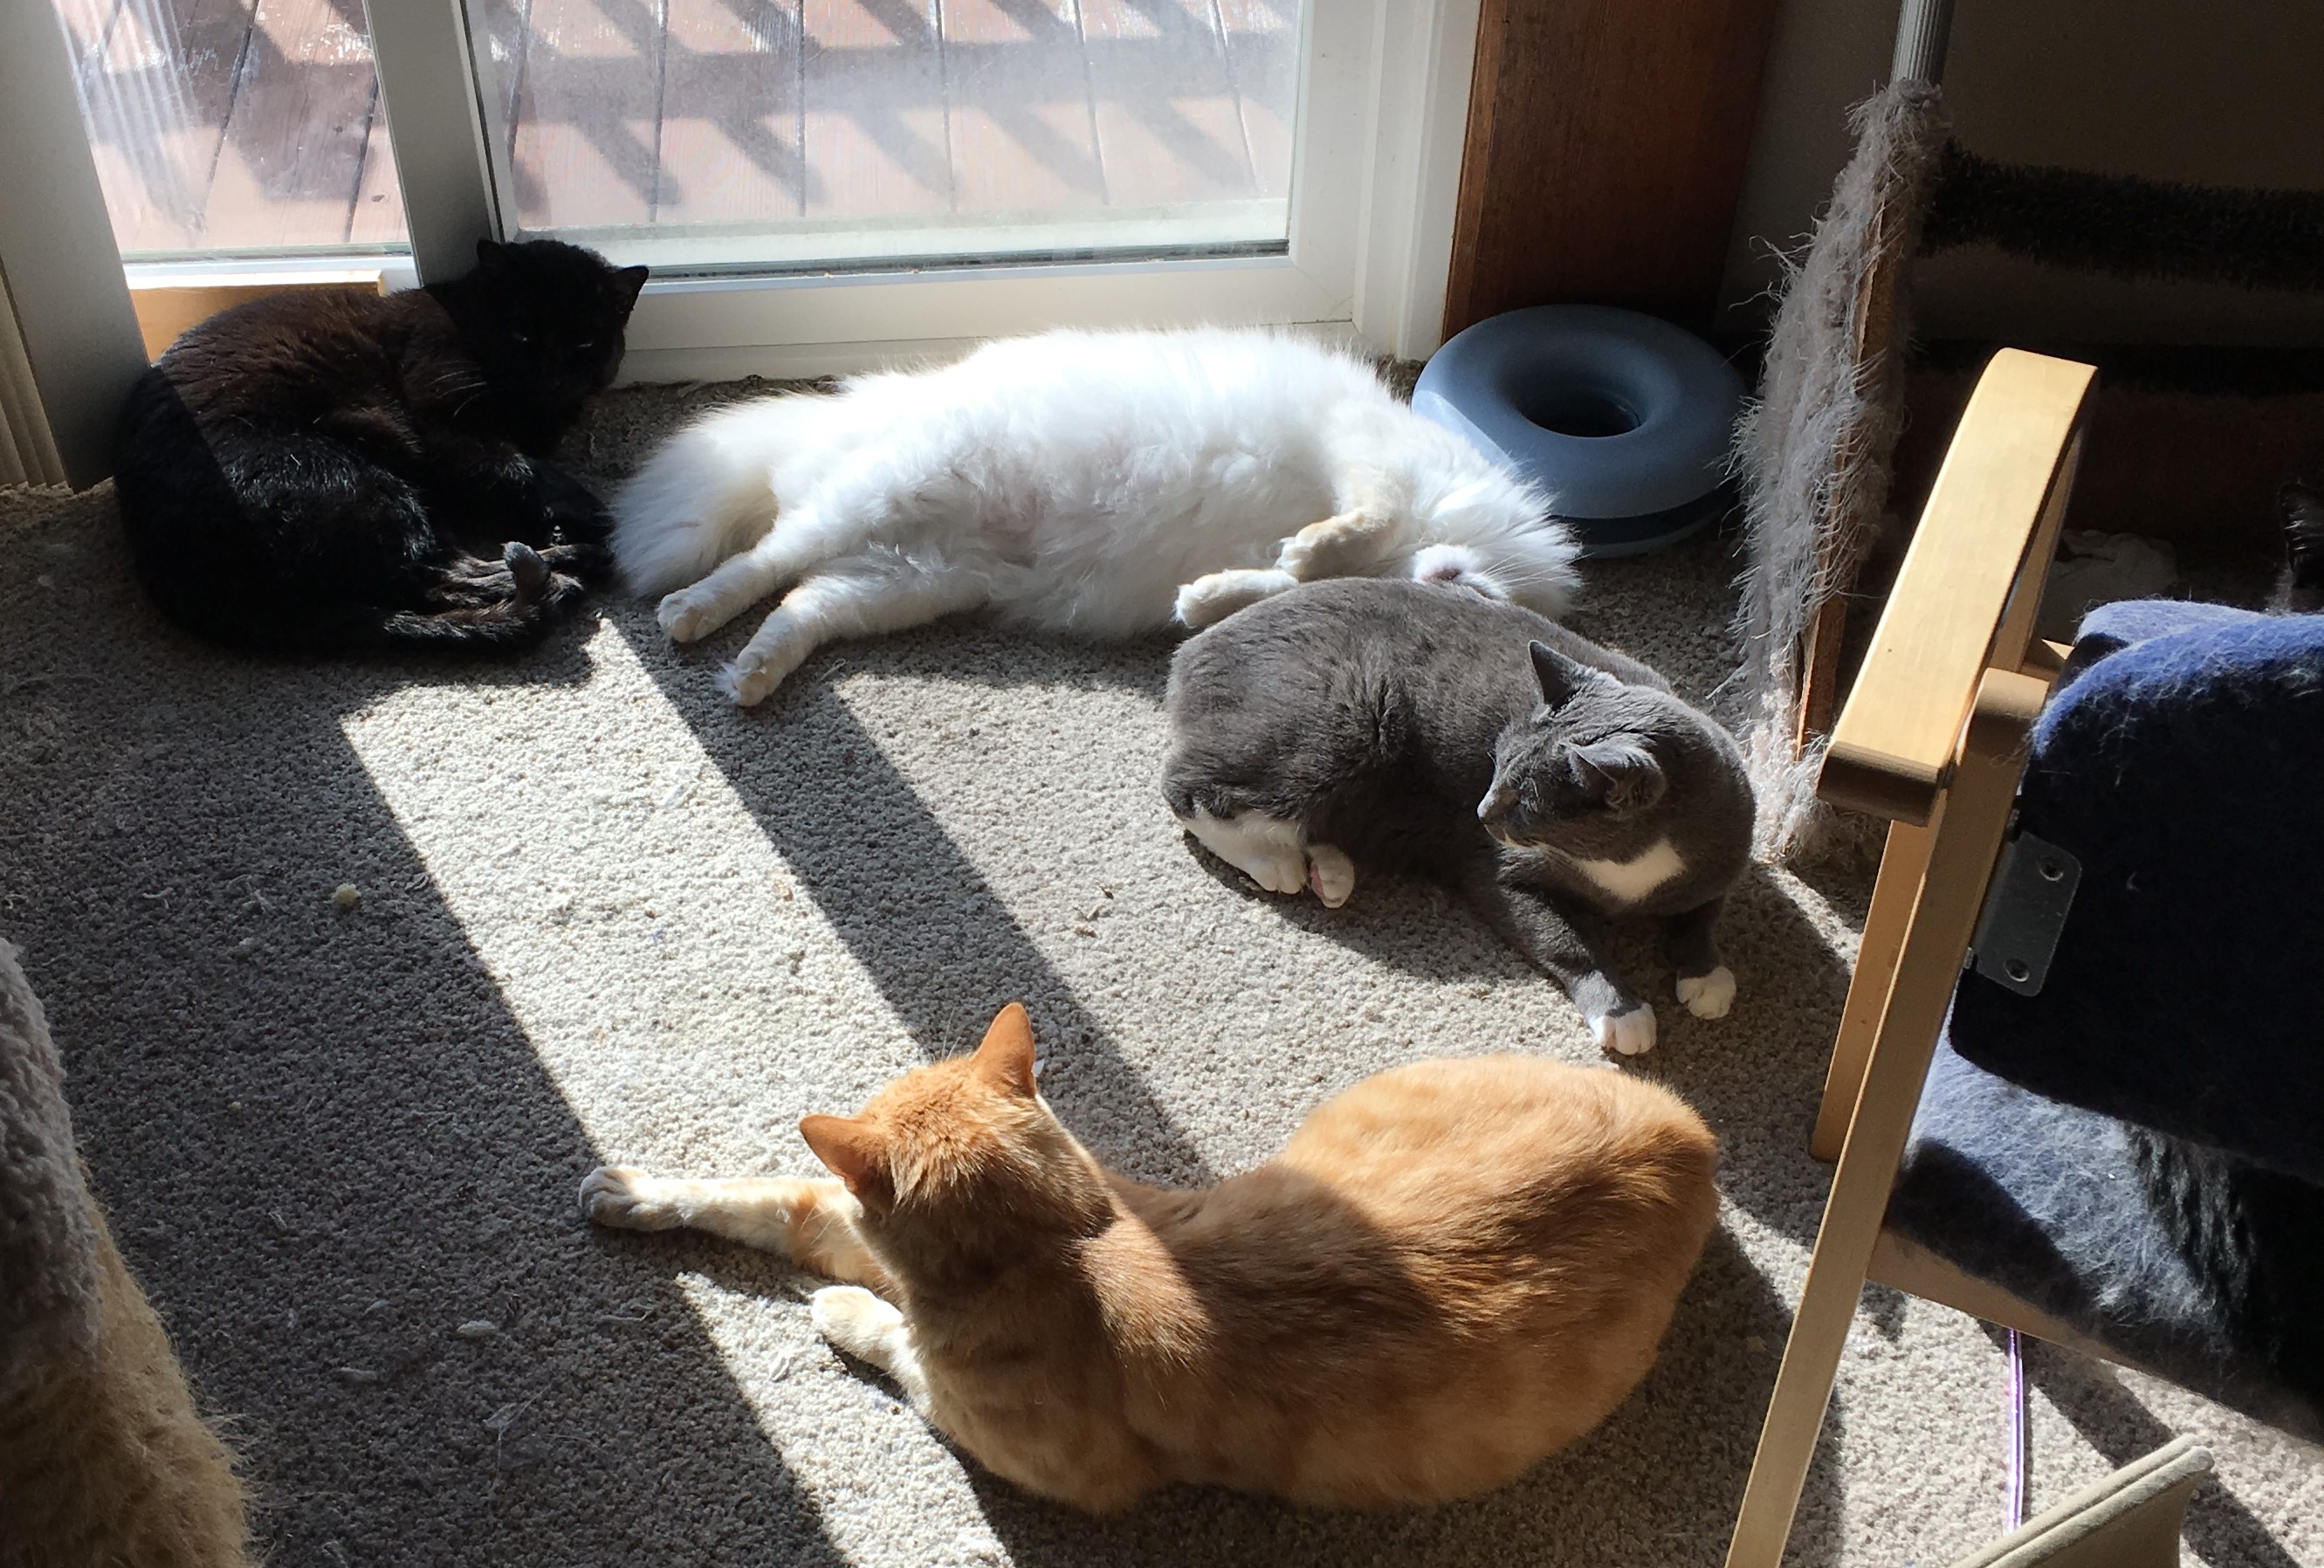 cats in sun 2018-06-05 17.43.26.jpg